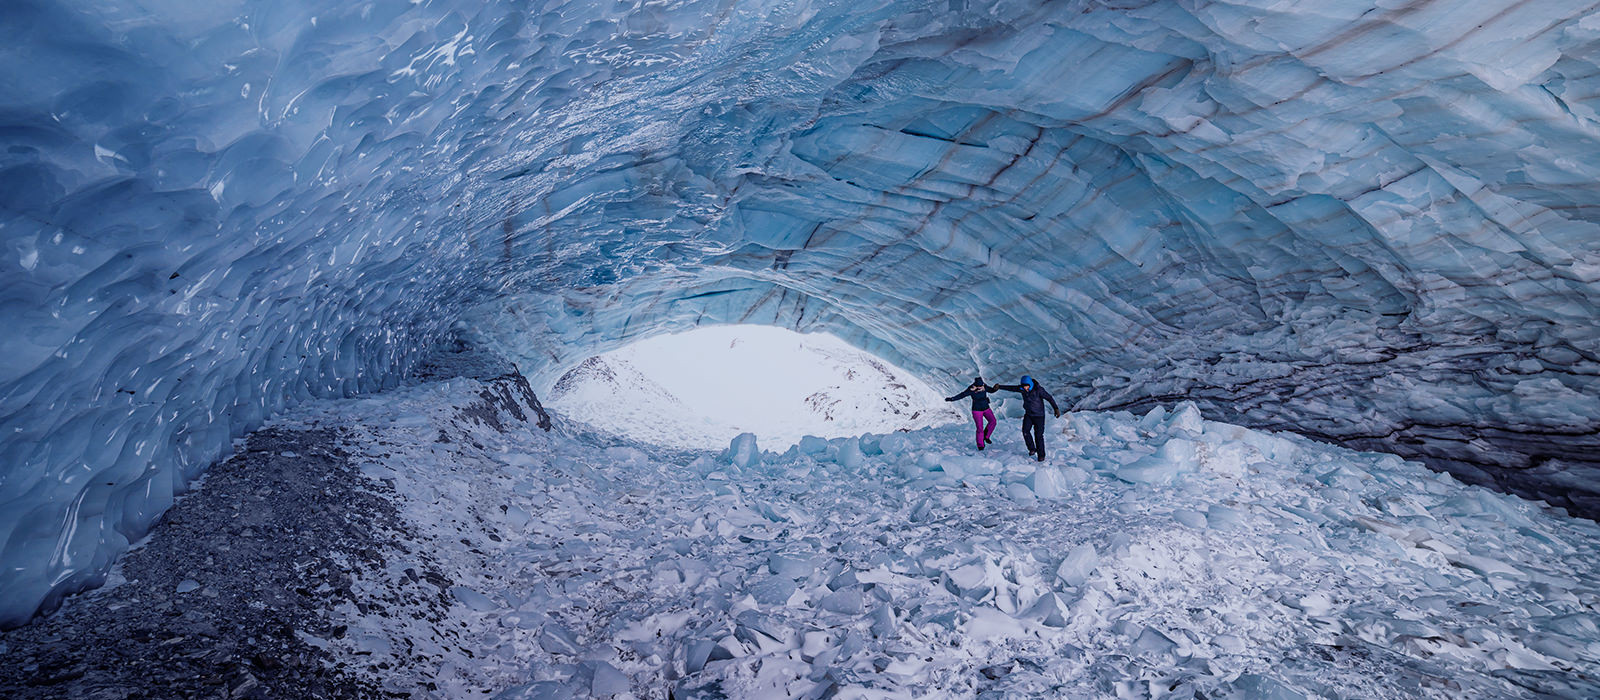 Et par går inne i en hule fylt med is